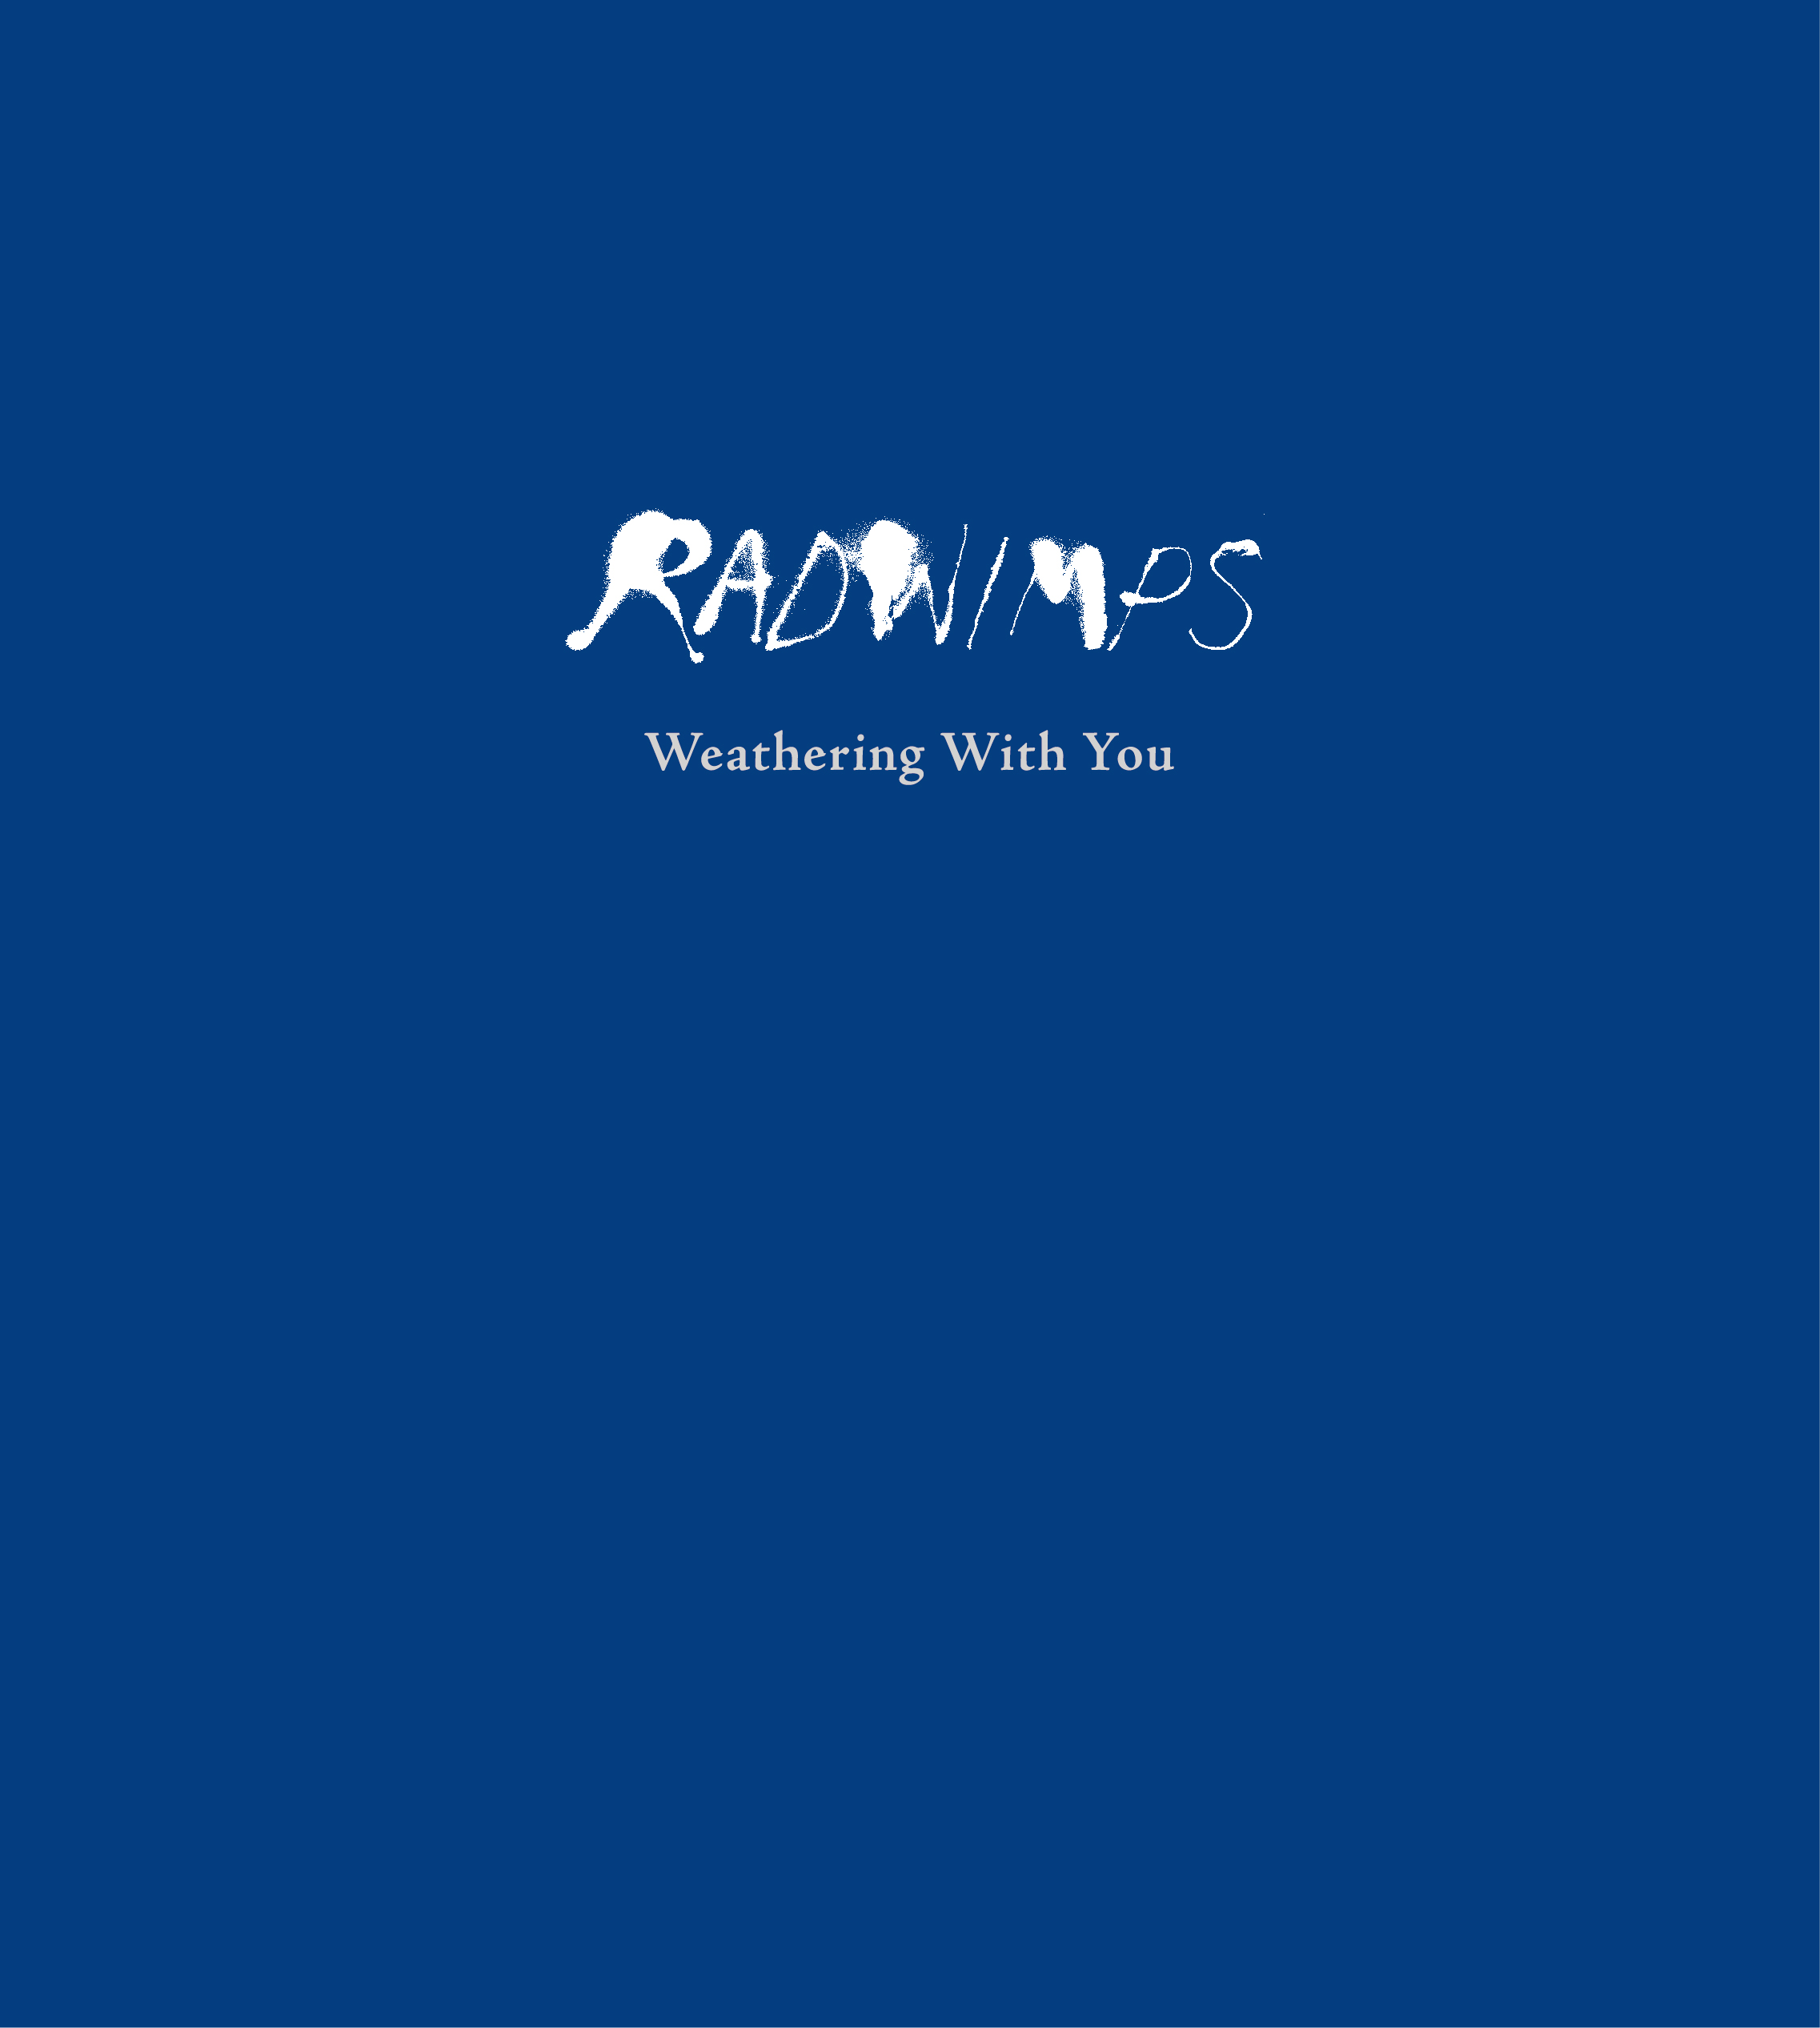 Radwimps 映画 天気の子 主題歌5曲のフルヴァージョンを収録したcdのjkビジュアル公開 Moshi Moshi Nippon もしもしにっぽん